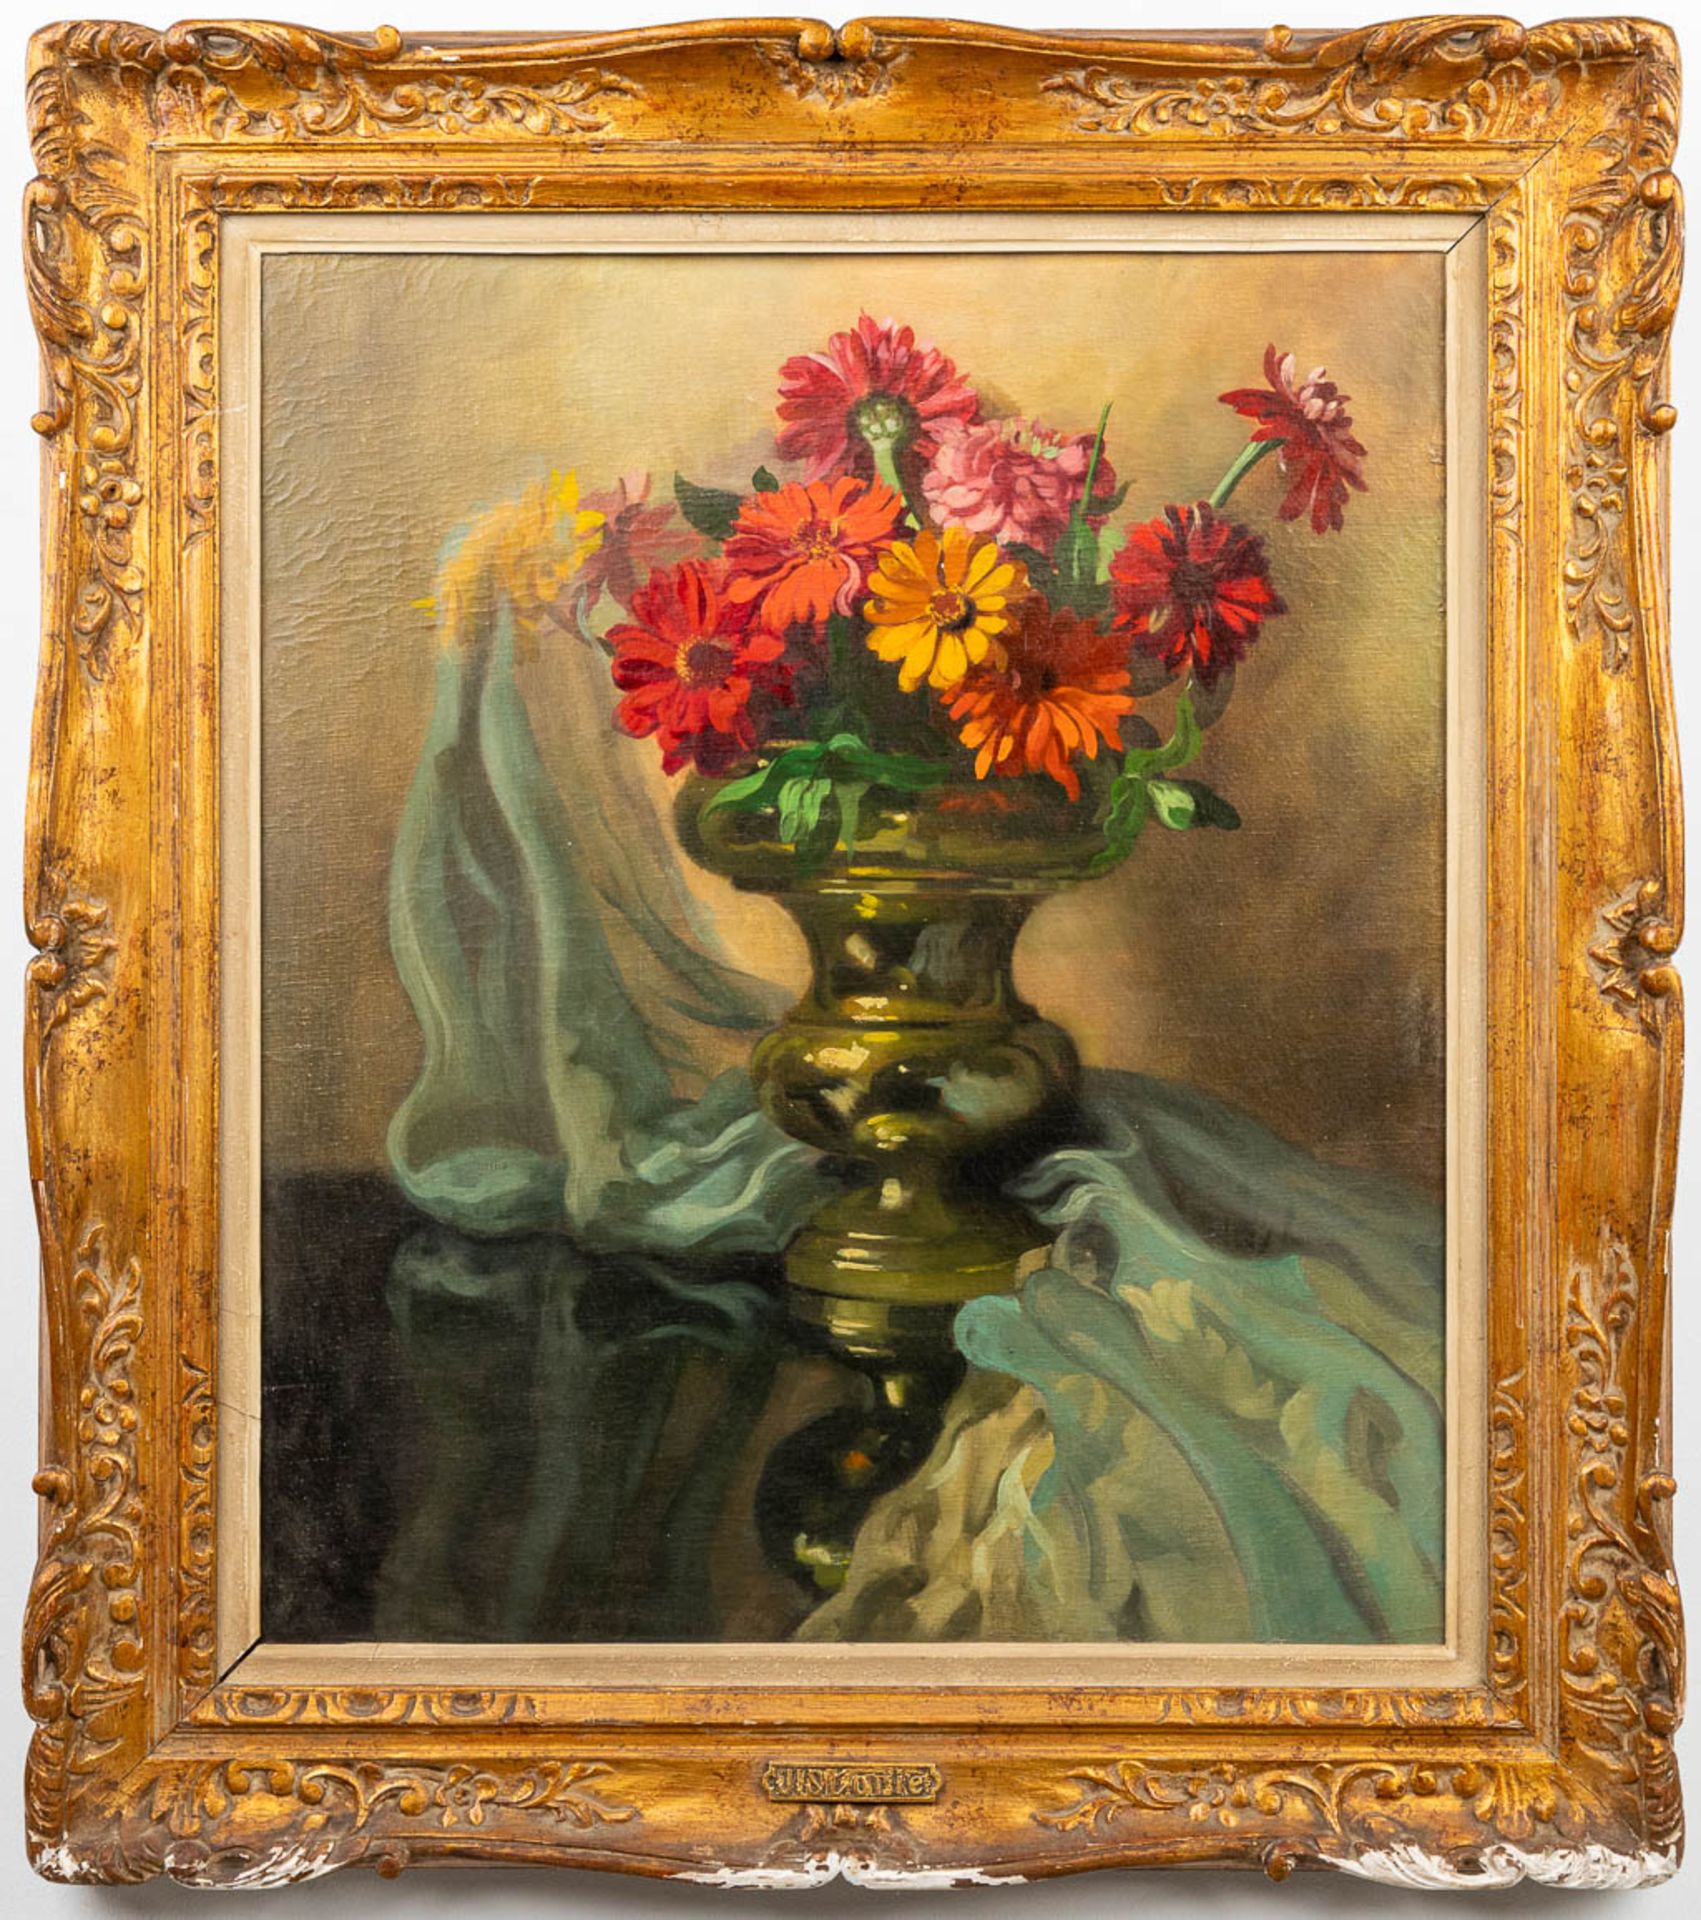 José STORIE (1899-1961) 'Flower Bouquet' a still life painting, oil on canvas. (60 x 70 cm) - Bild 5 aus 6